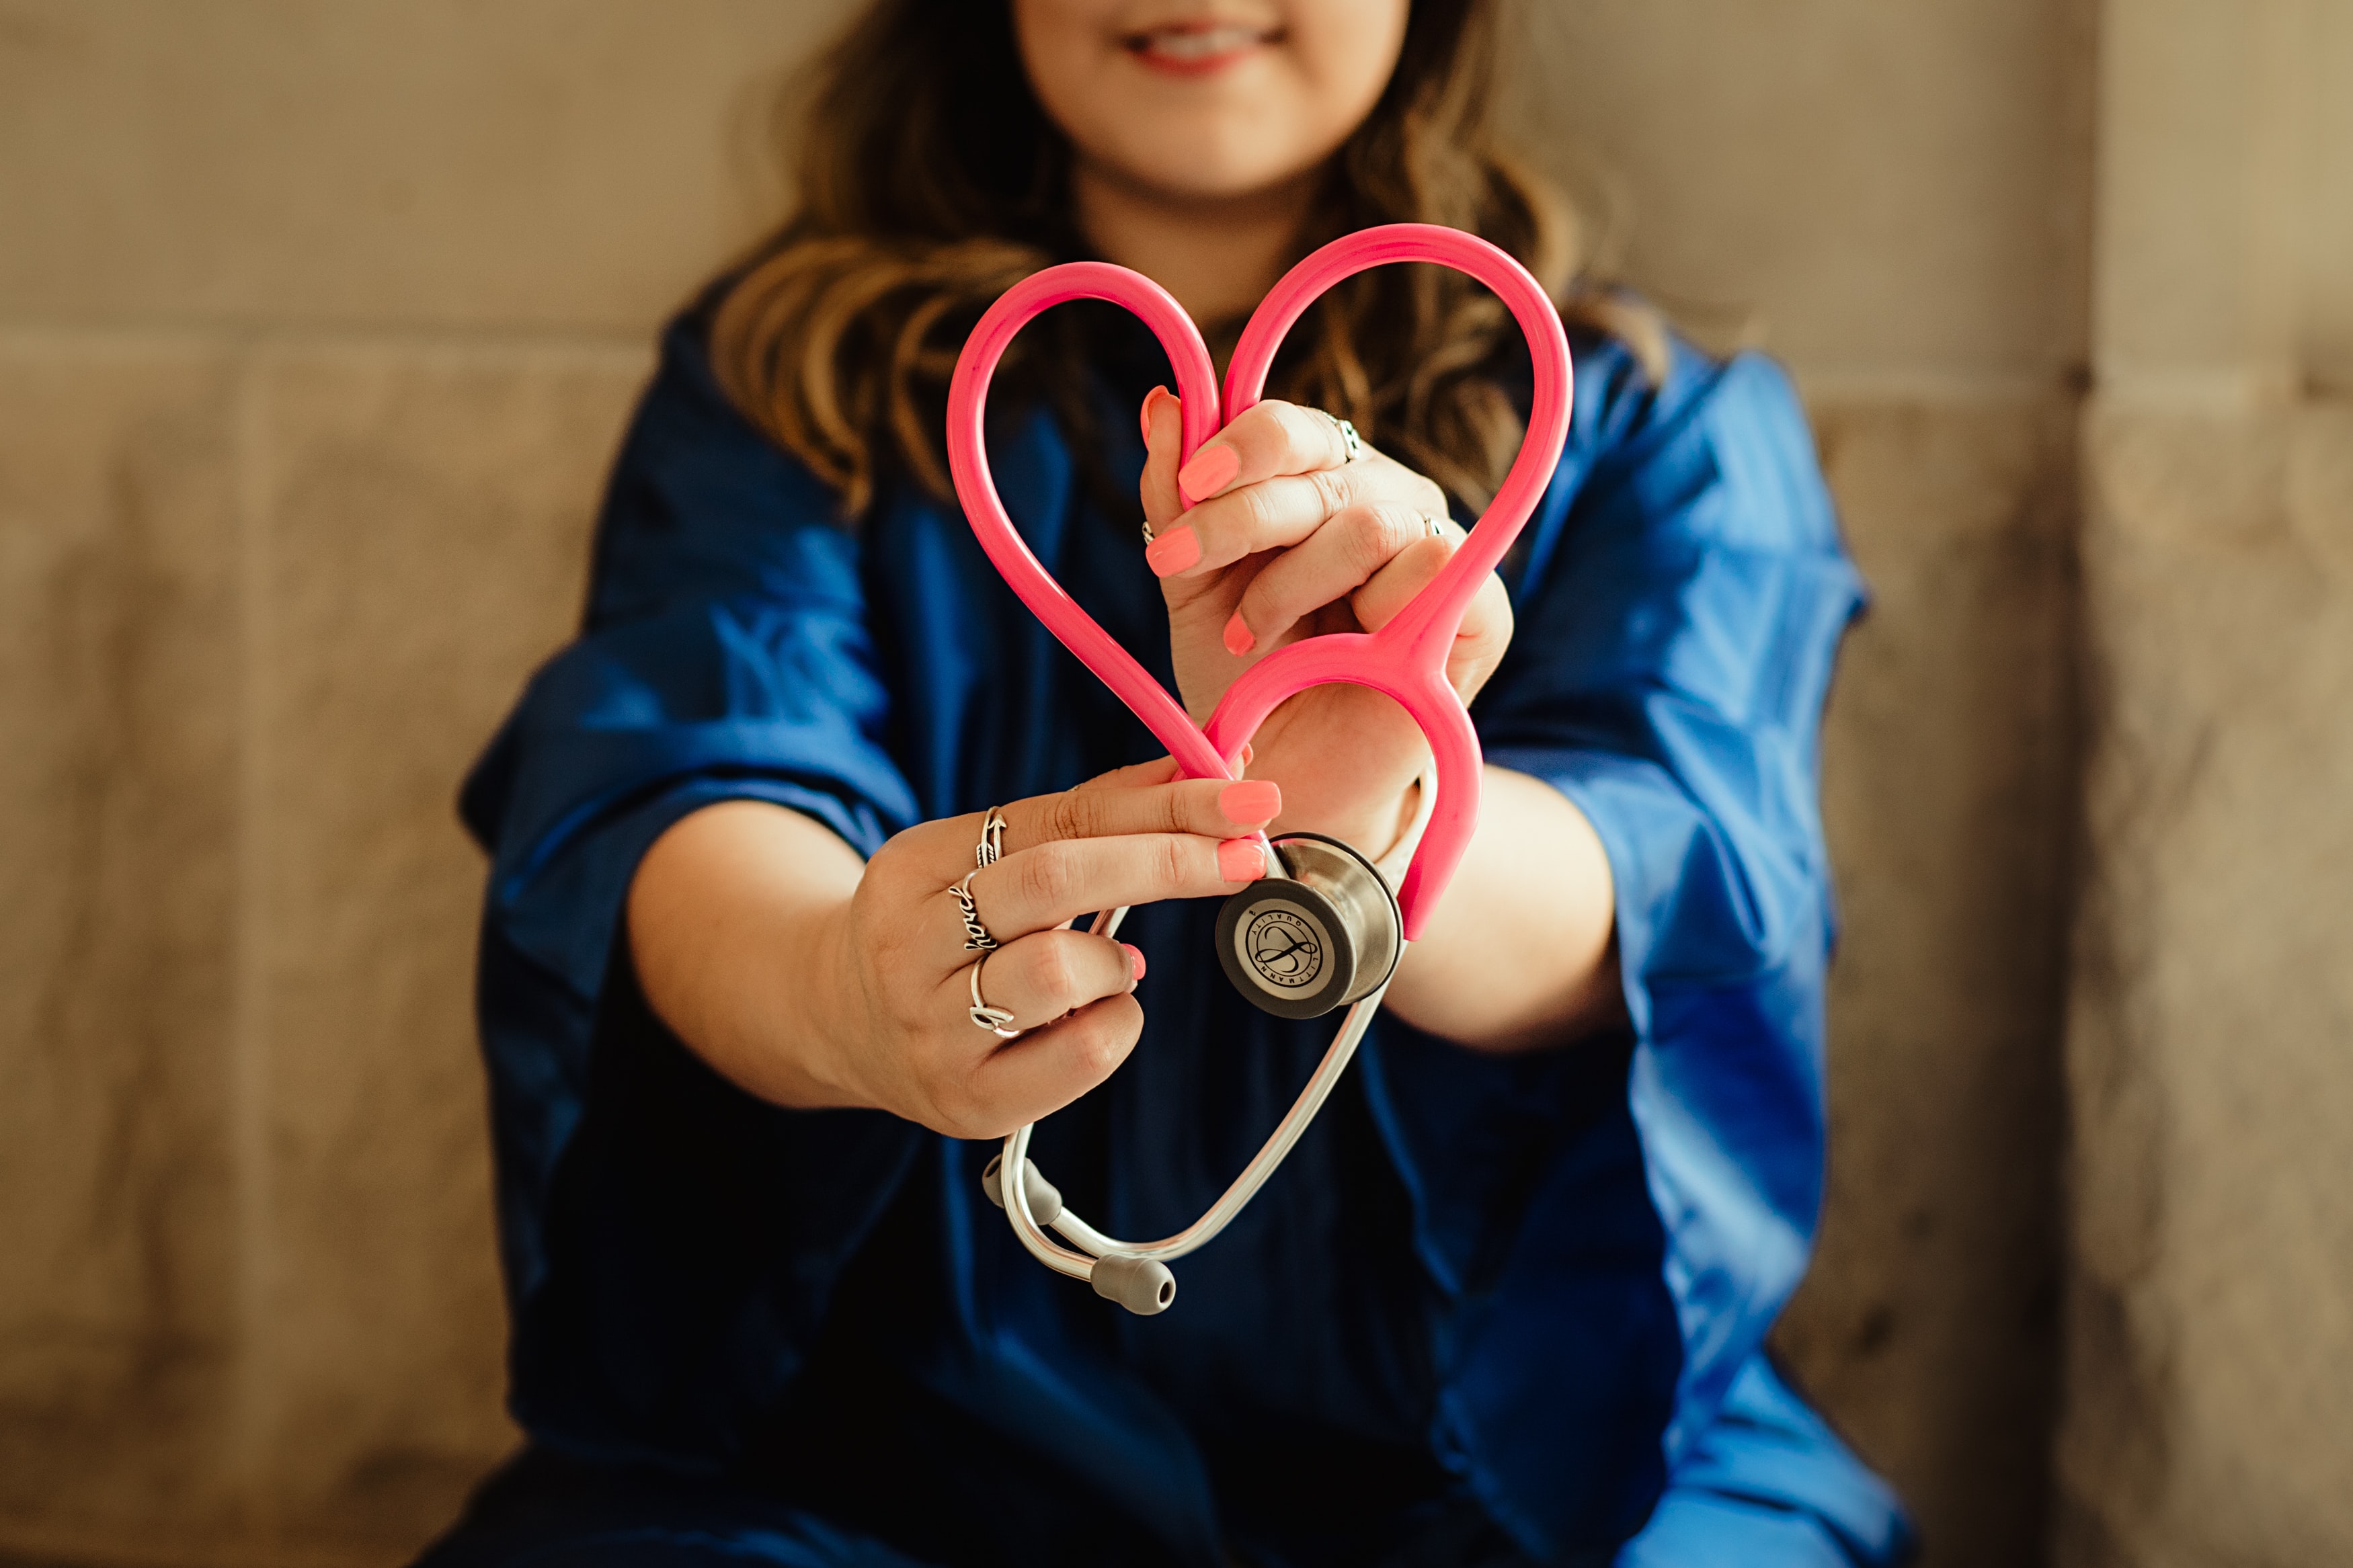 Ärztin hält ein Stetoskop in den Händen, das zu einem Herz geformt ist.